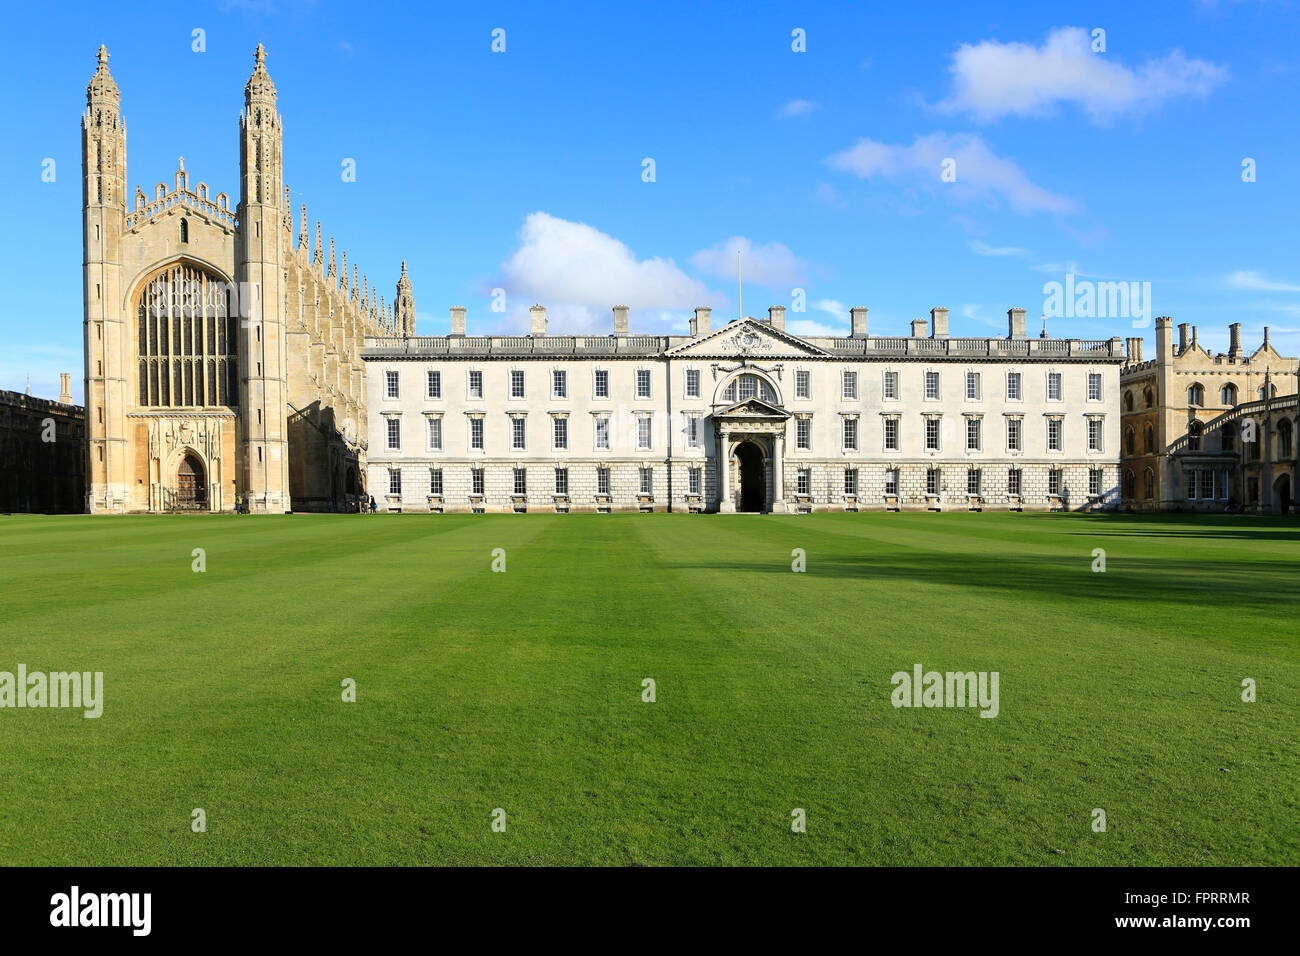 Großbritannien, Cambridge, University of Cambridge, Kings College mit der berühmten gotischen Kapelle und dem James Gibbs Gebäude vom Cam River Stockfoto